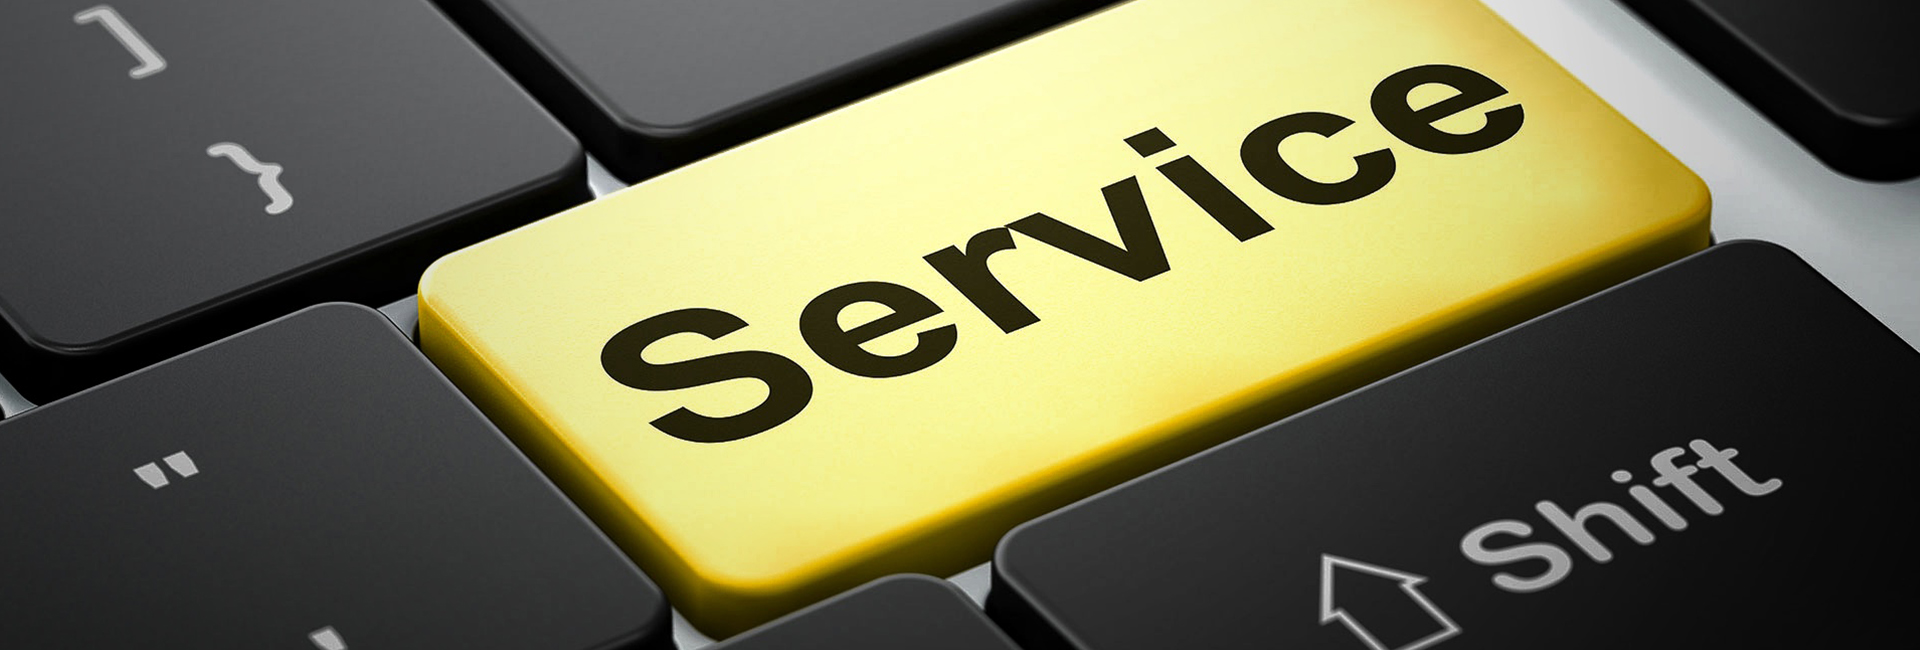 service management erp software